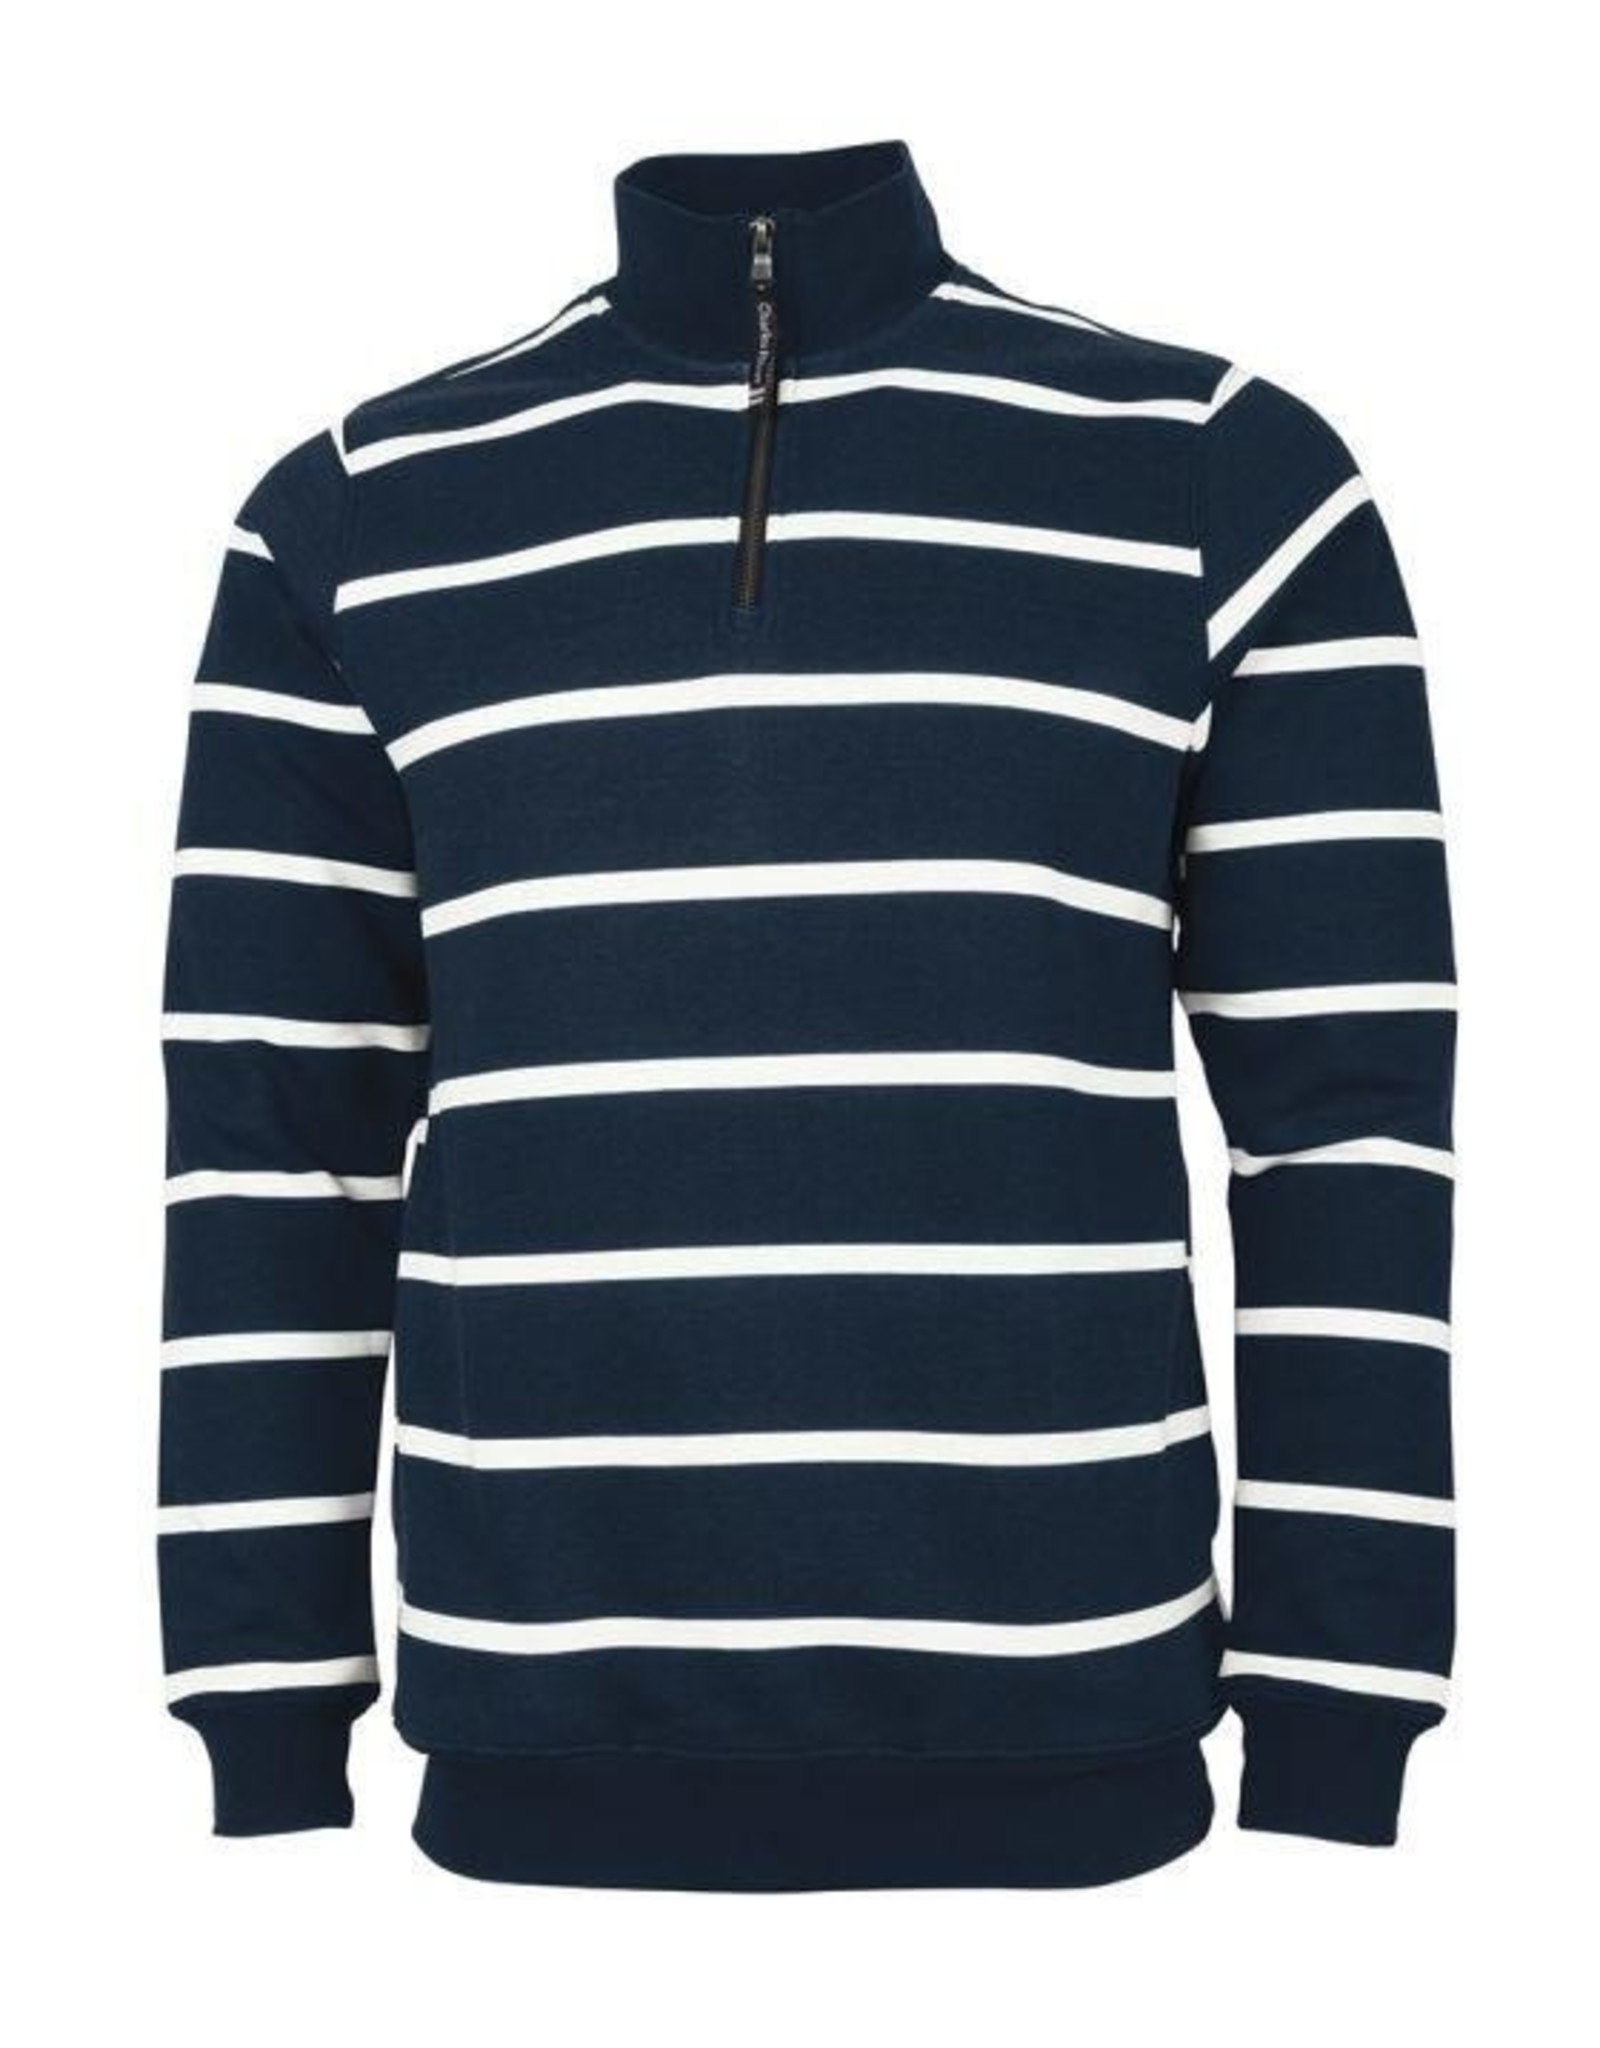 NON-UNIFORM Crosswind 1/4 Zip Stripe Sweatshirt, Custom Order